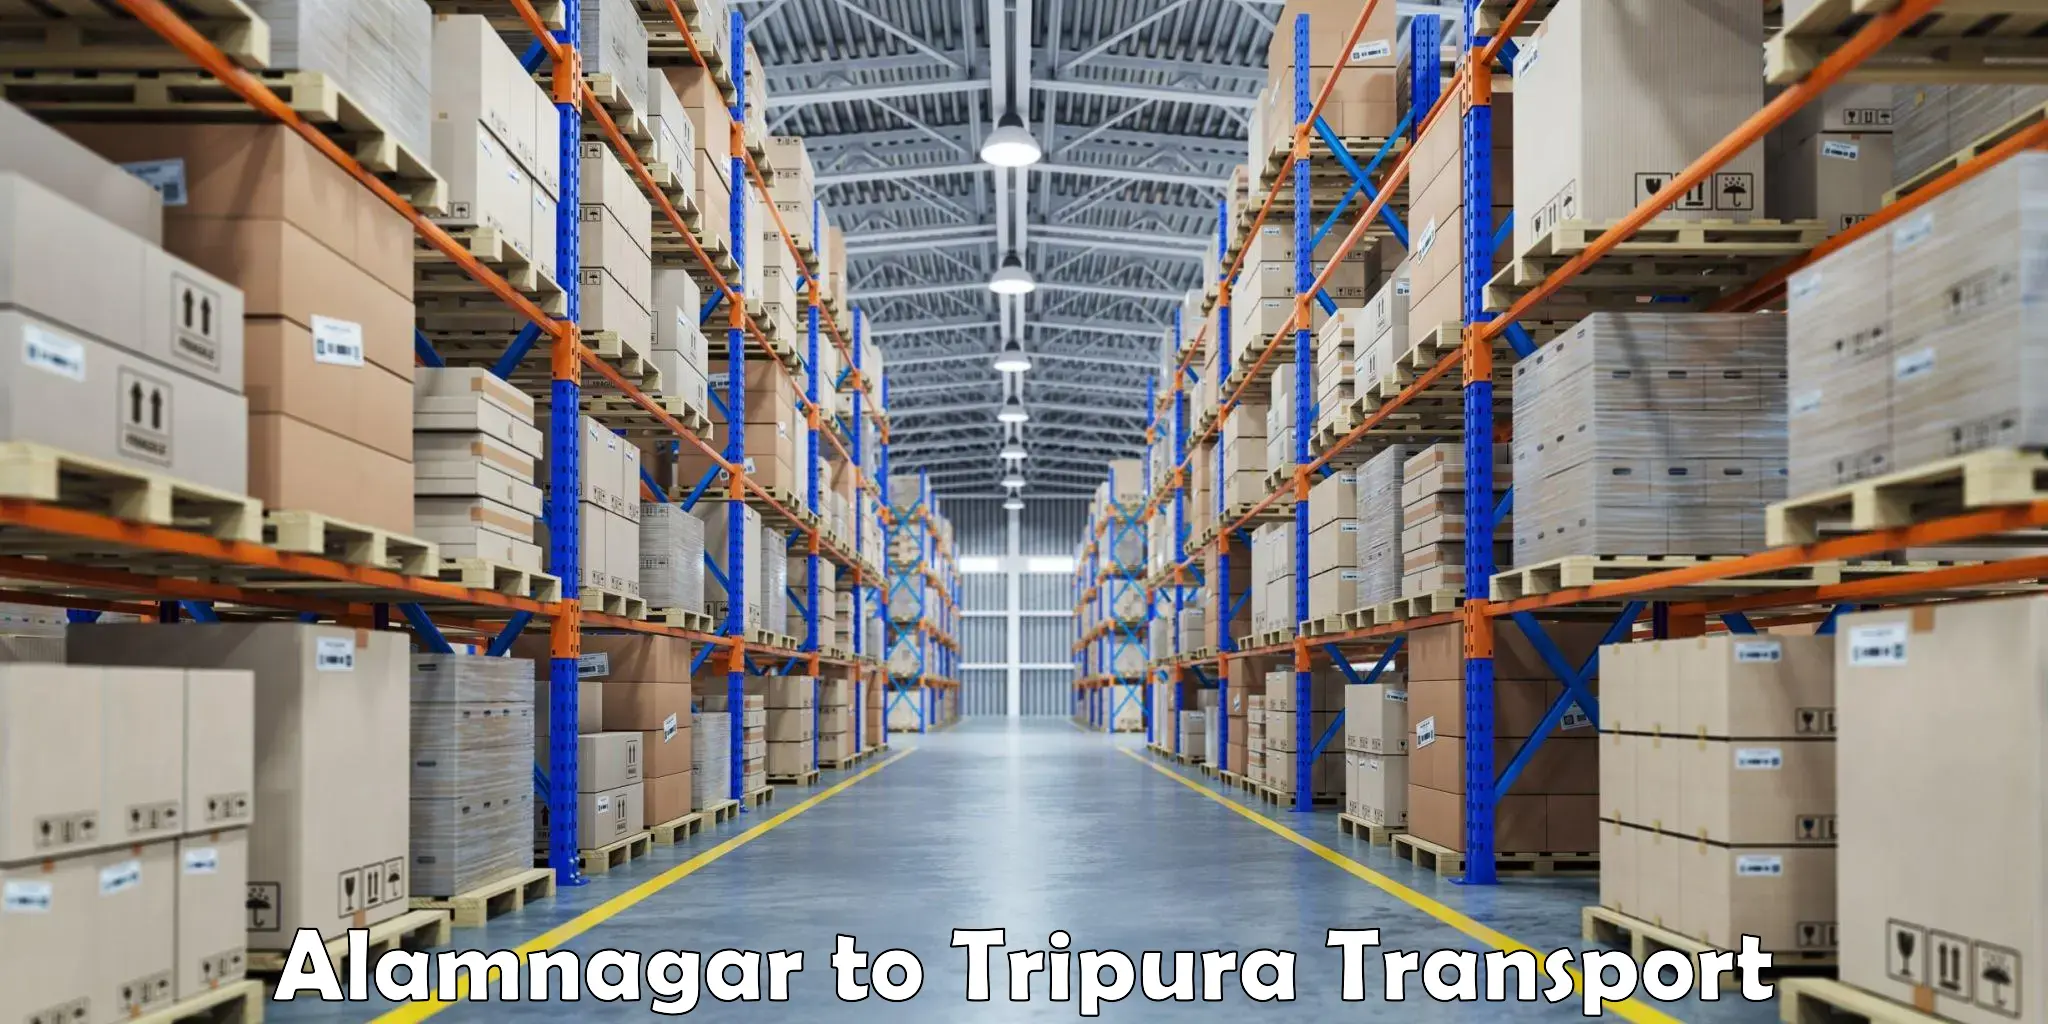 Commercial transport service Alamnagar to Manughat